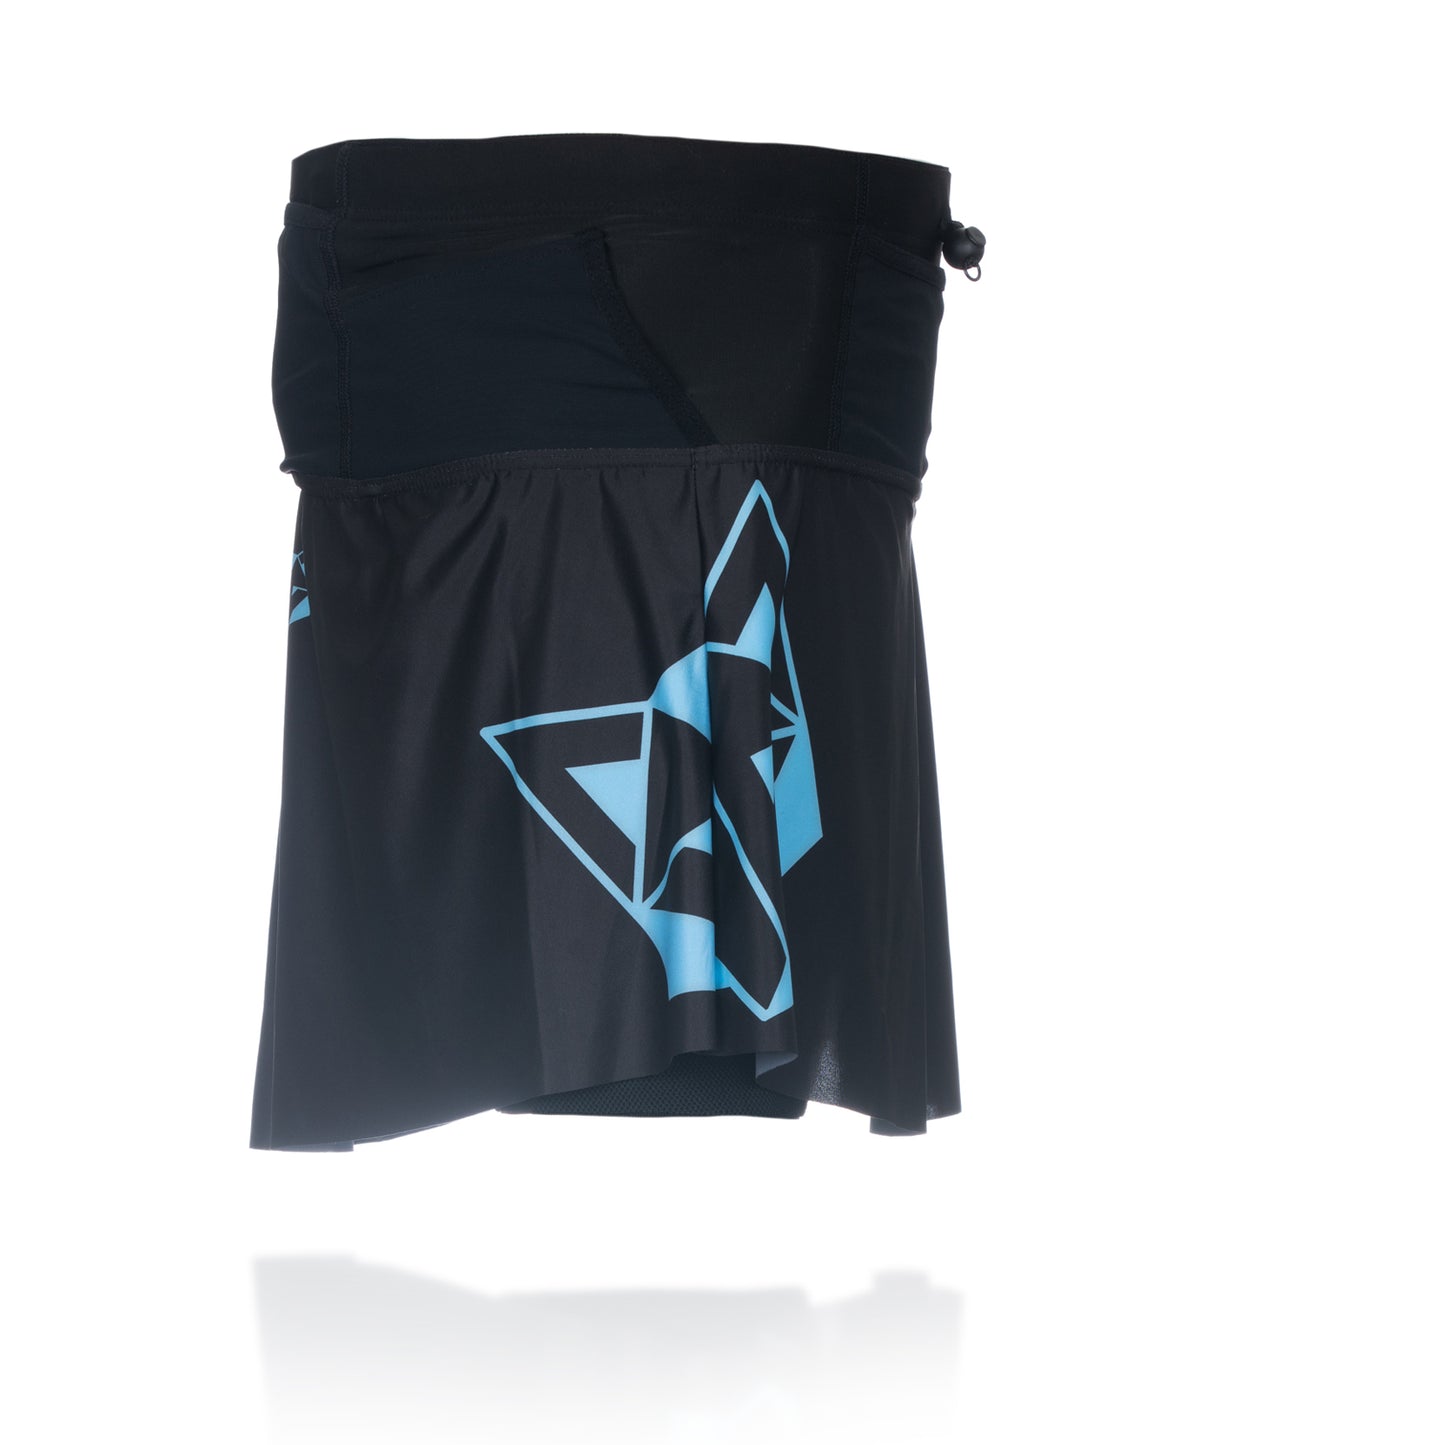 Women's skirt - Black & Turquoise